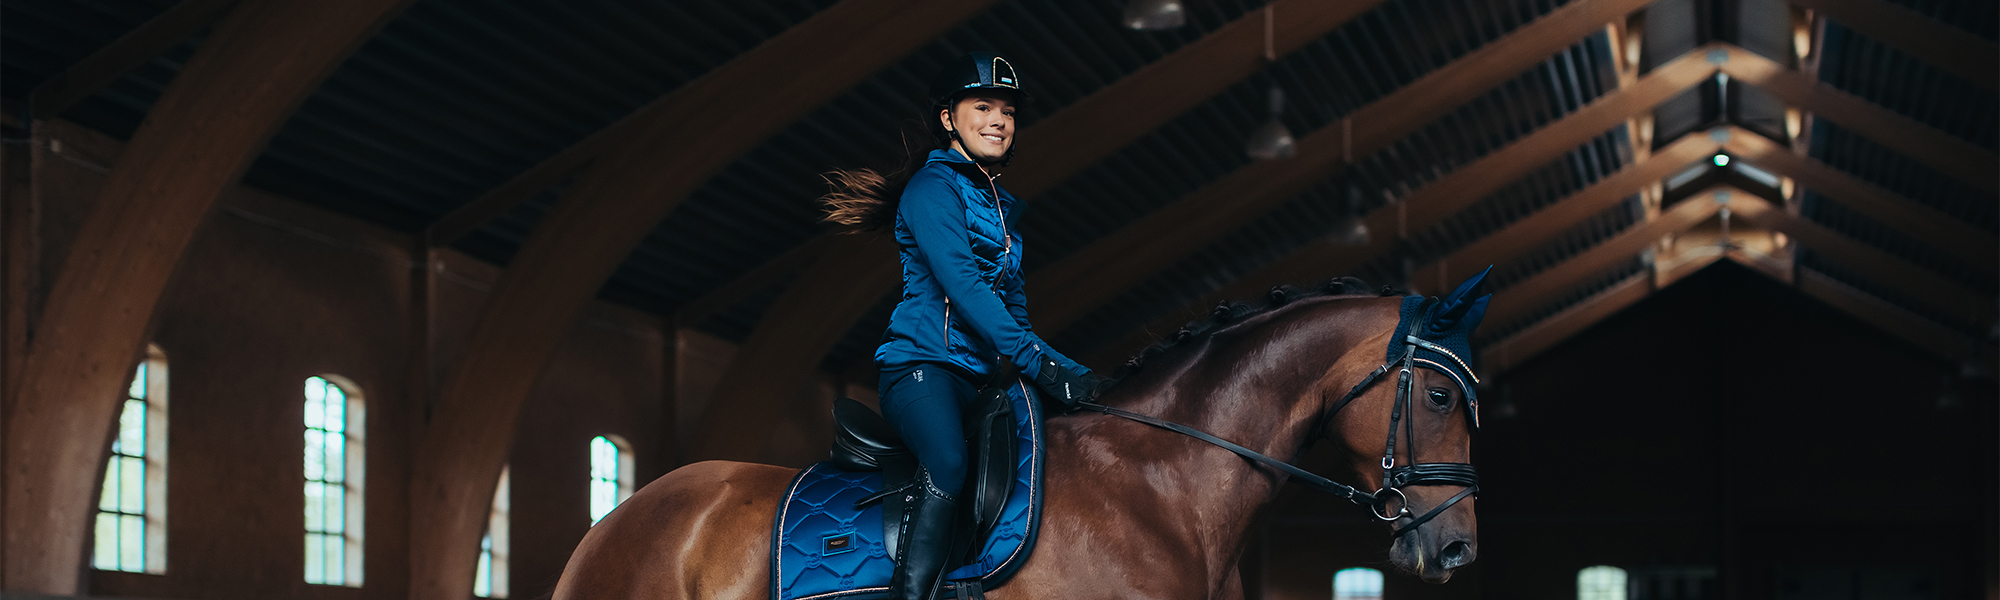 Equestrian Stockholm ingår partnerskap med Priveq